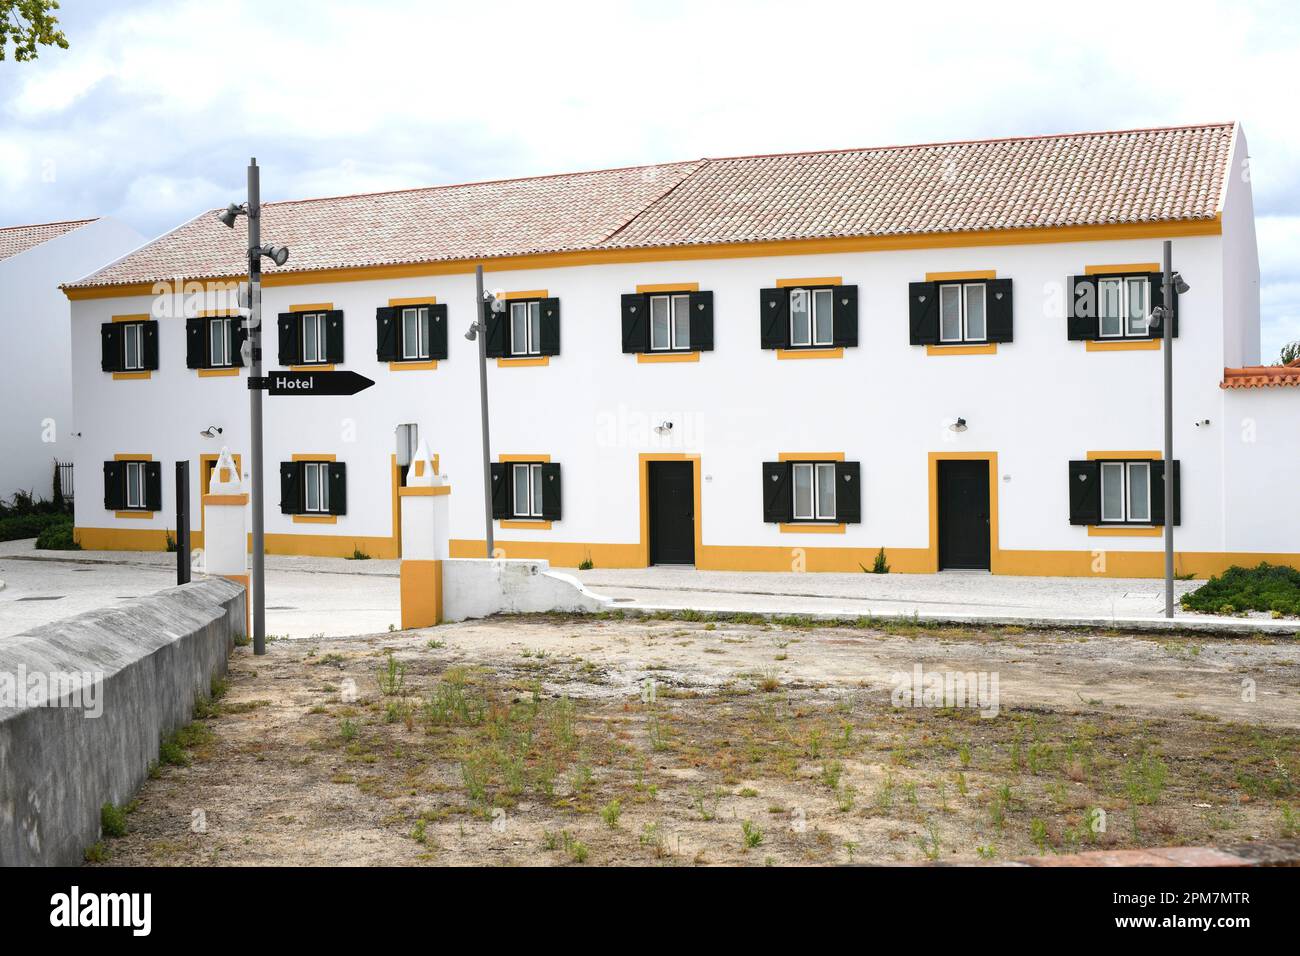 Vista Alegre, Fabrica de Porcelana. Ilhavo, Aveiro, Portugal. Stockfoto